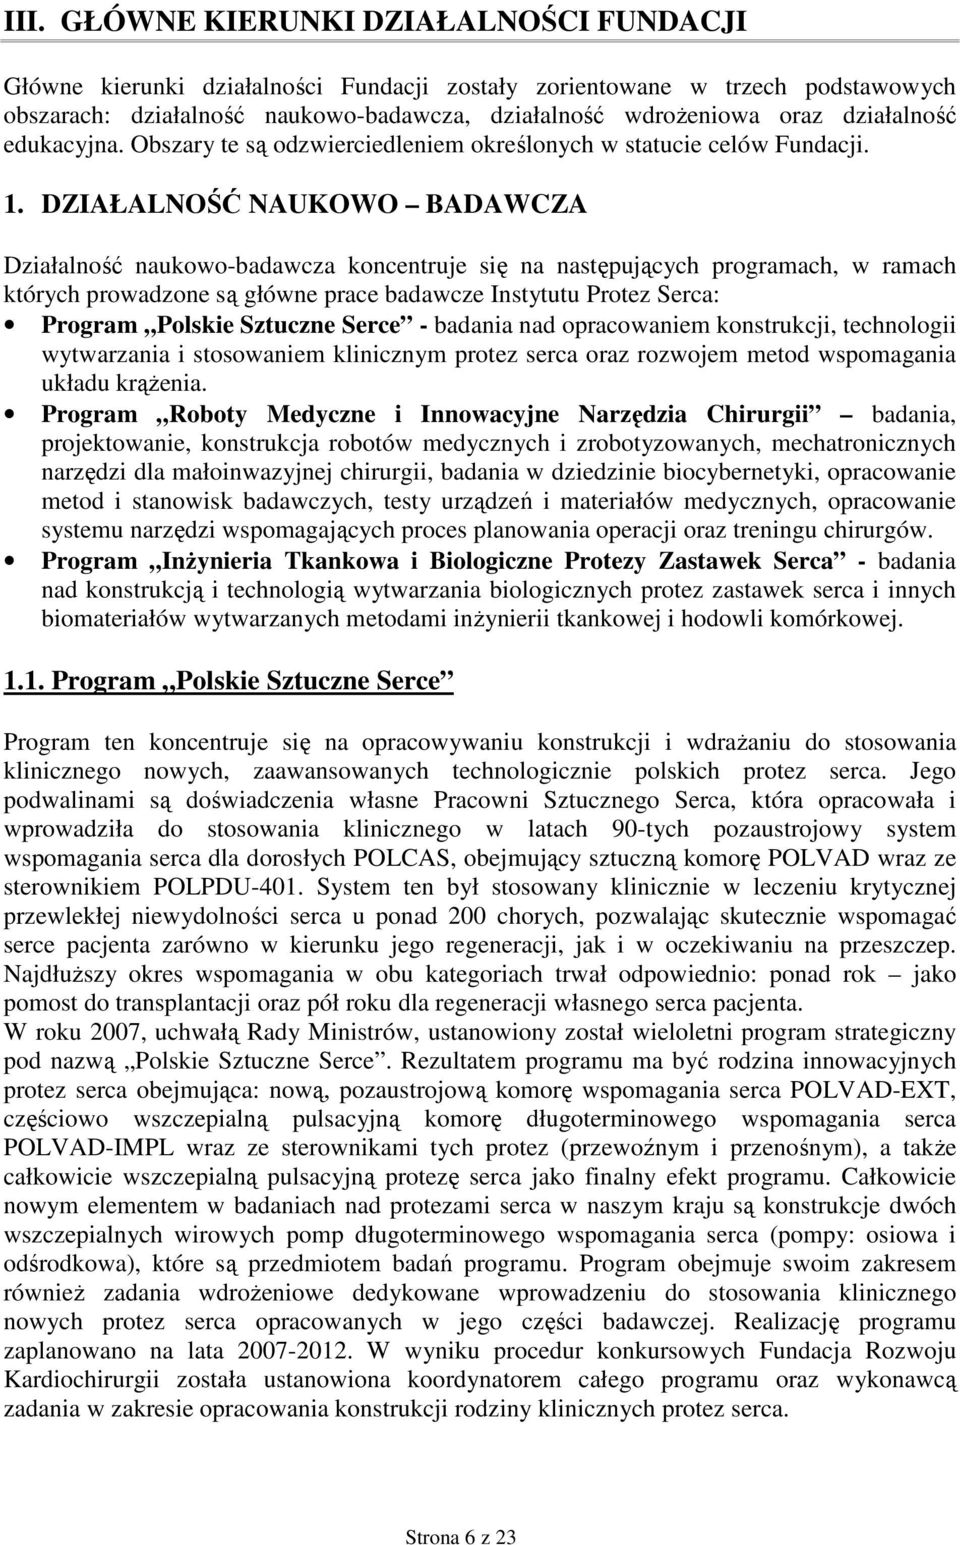 DZIAŁALNOŚĆ NAUKOWO BADAWCZA Działalność naukowo-badawcza koncentruje się na następujących programach, w ramach których prowadzone są główne prace badawcze Instytutu Protez Serca: Program Polskie